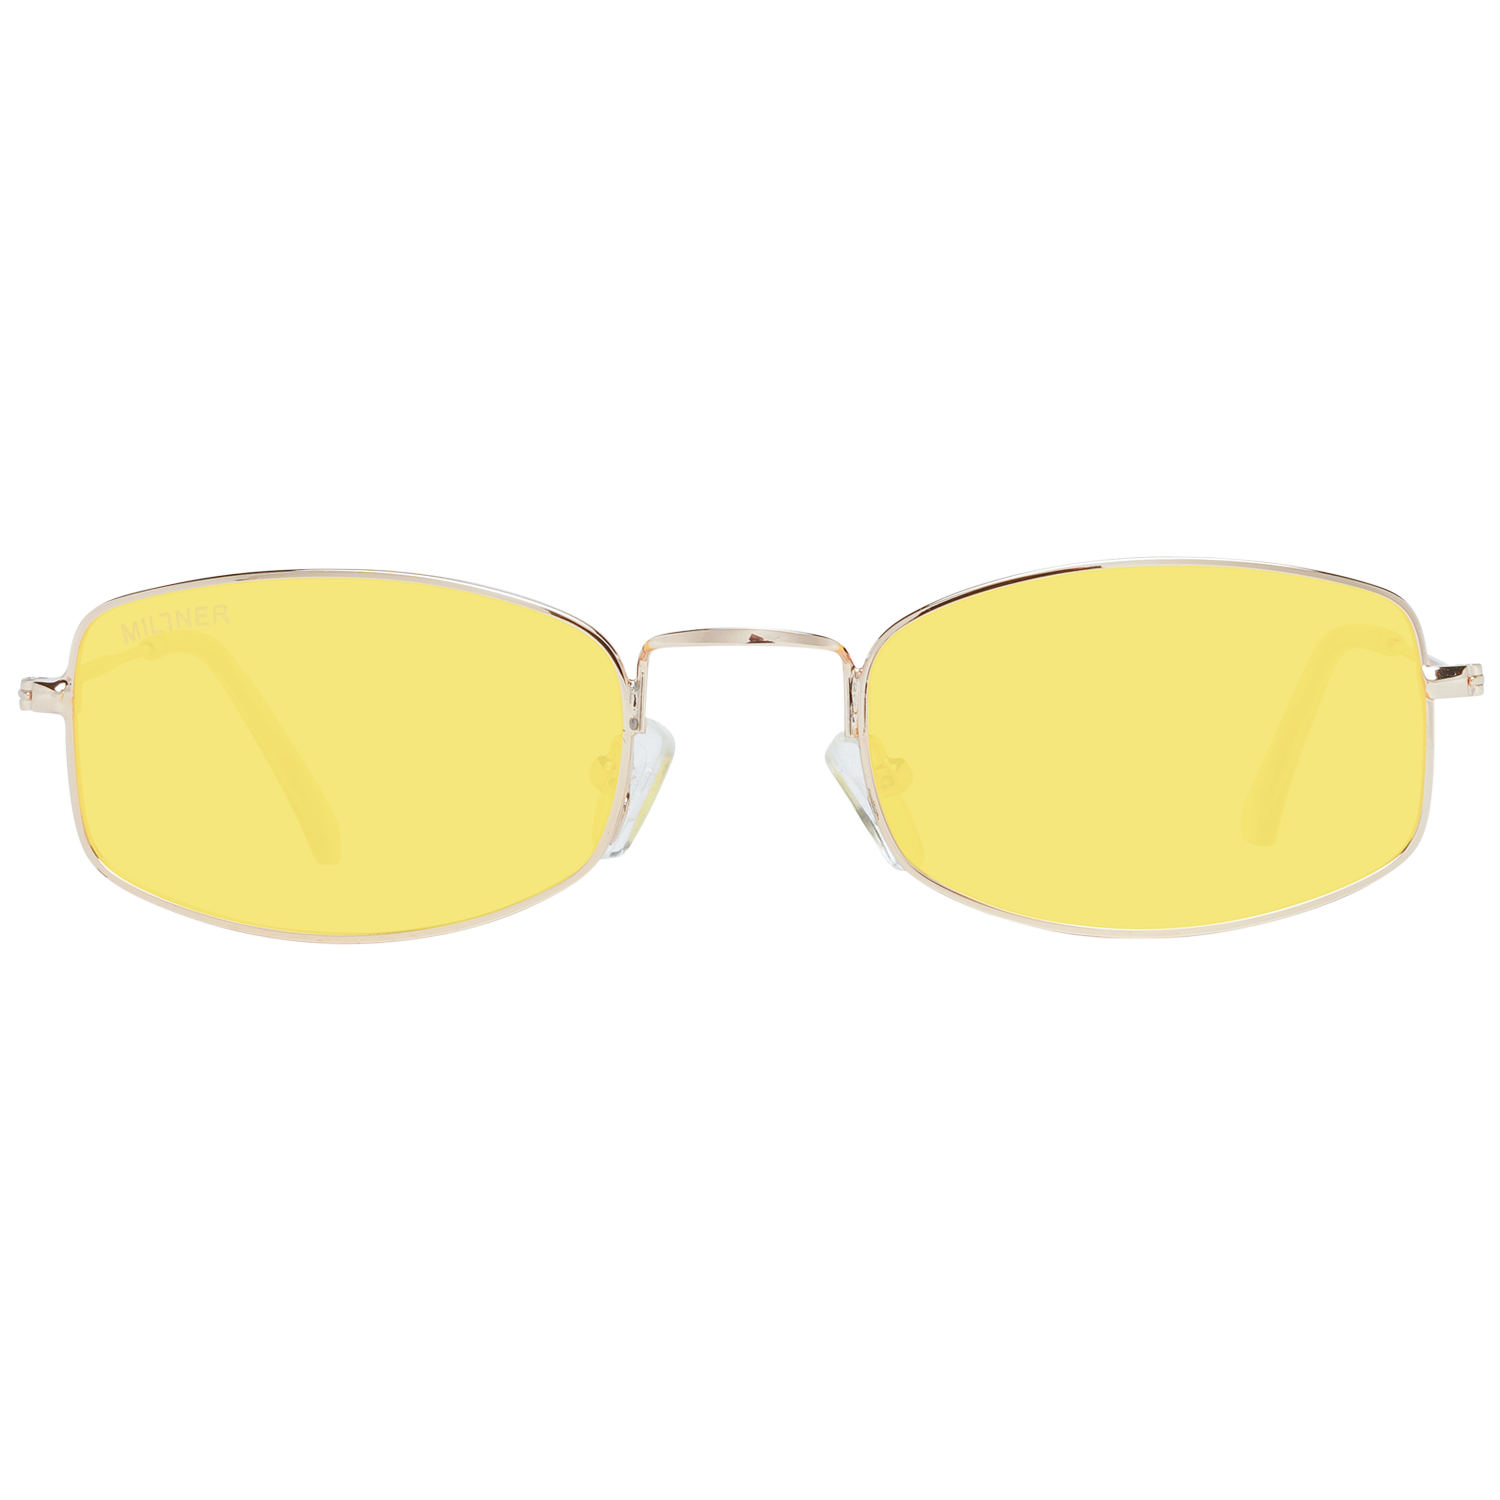 Millner Sunglasses Millner Sunglasses 0020704 Hilton Eyeglasses Eyewear UK USA Australia 